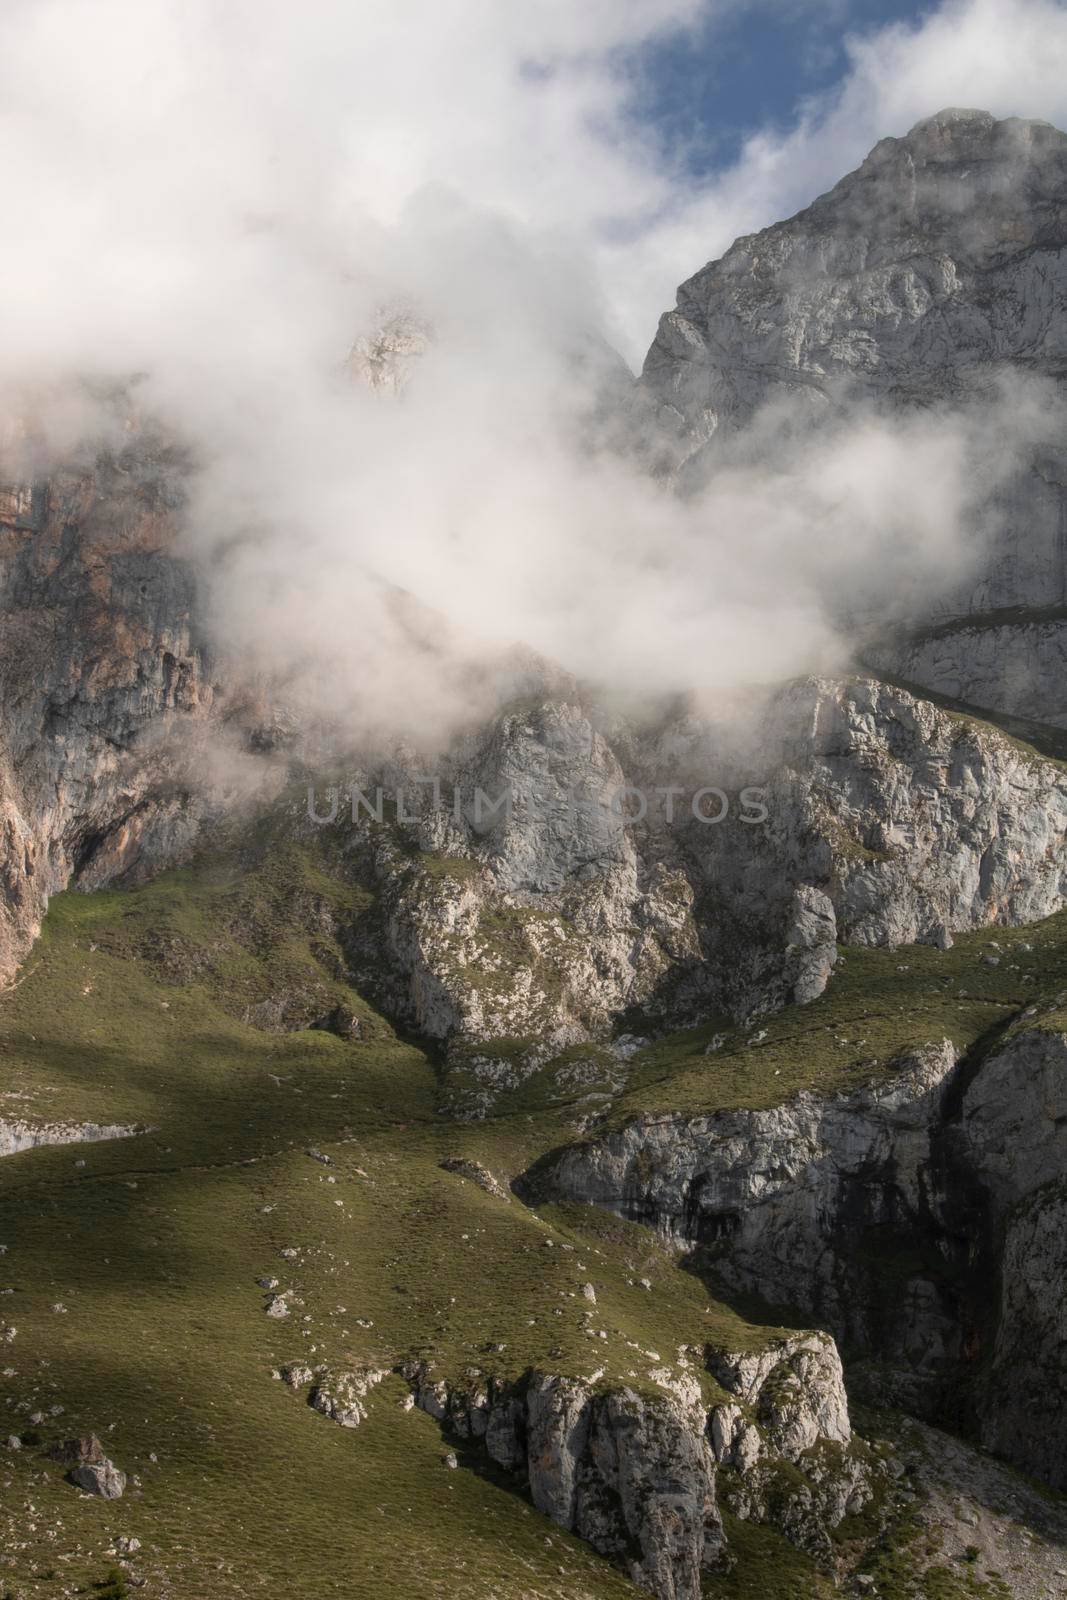 Foggy landscape showing a rocky mountain in Fuente De in Picos de Europa in Spain